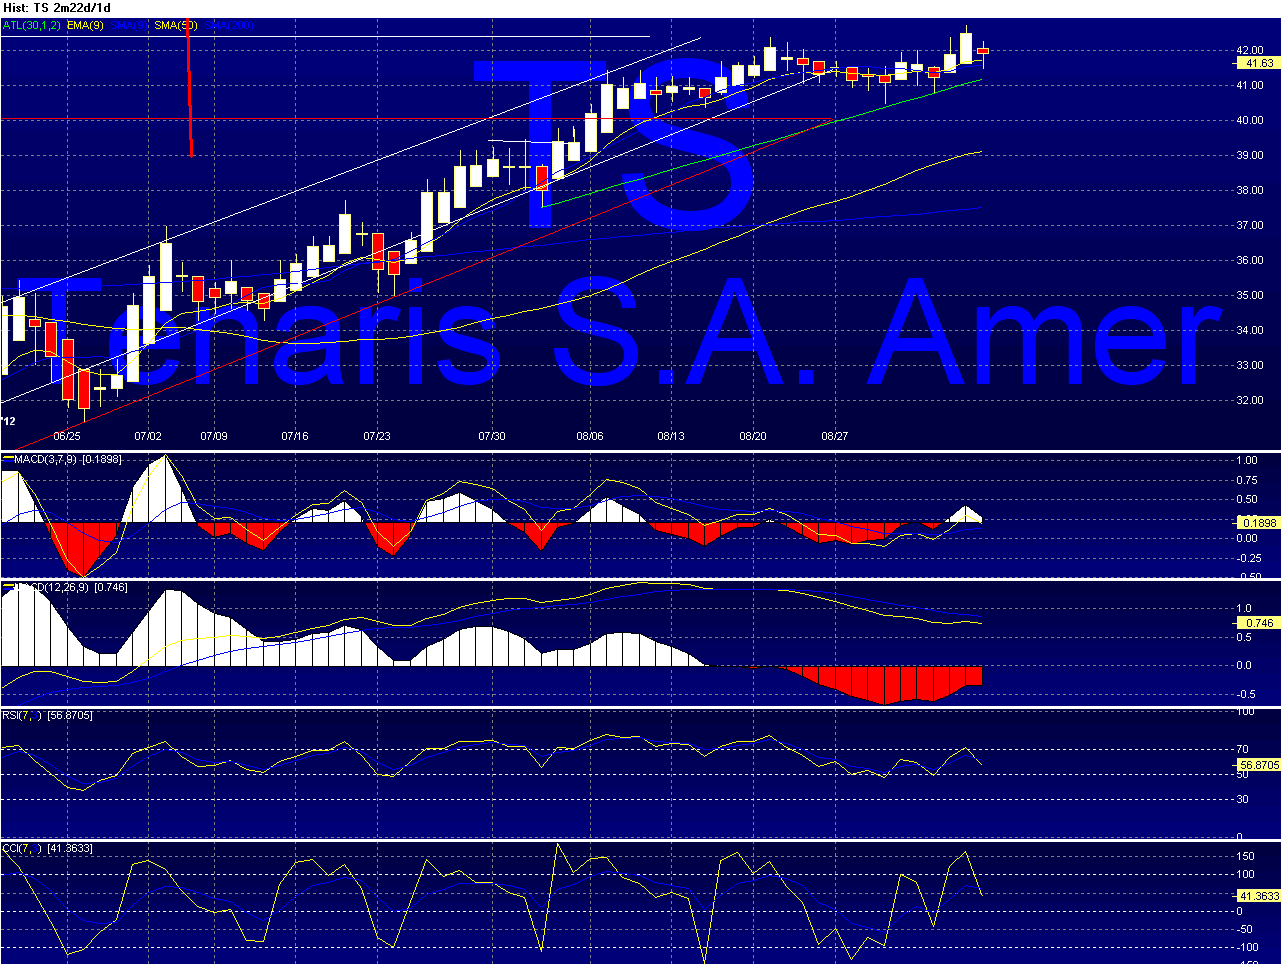 TS - Tenaris Chart_15